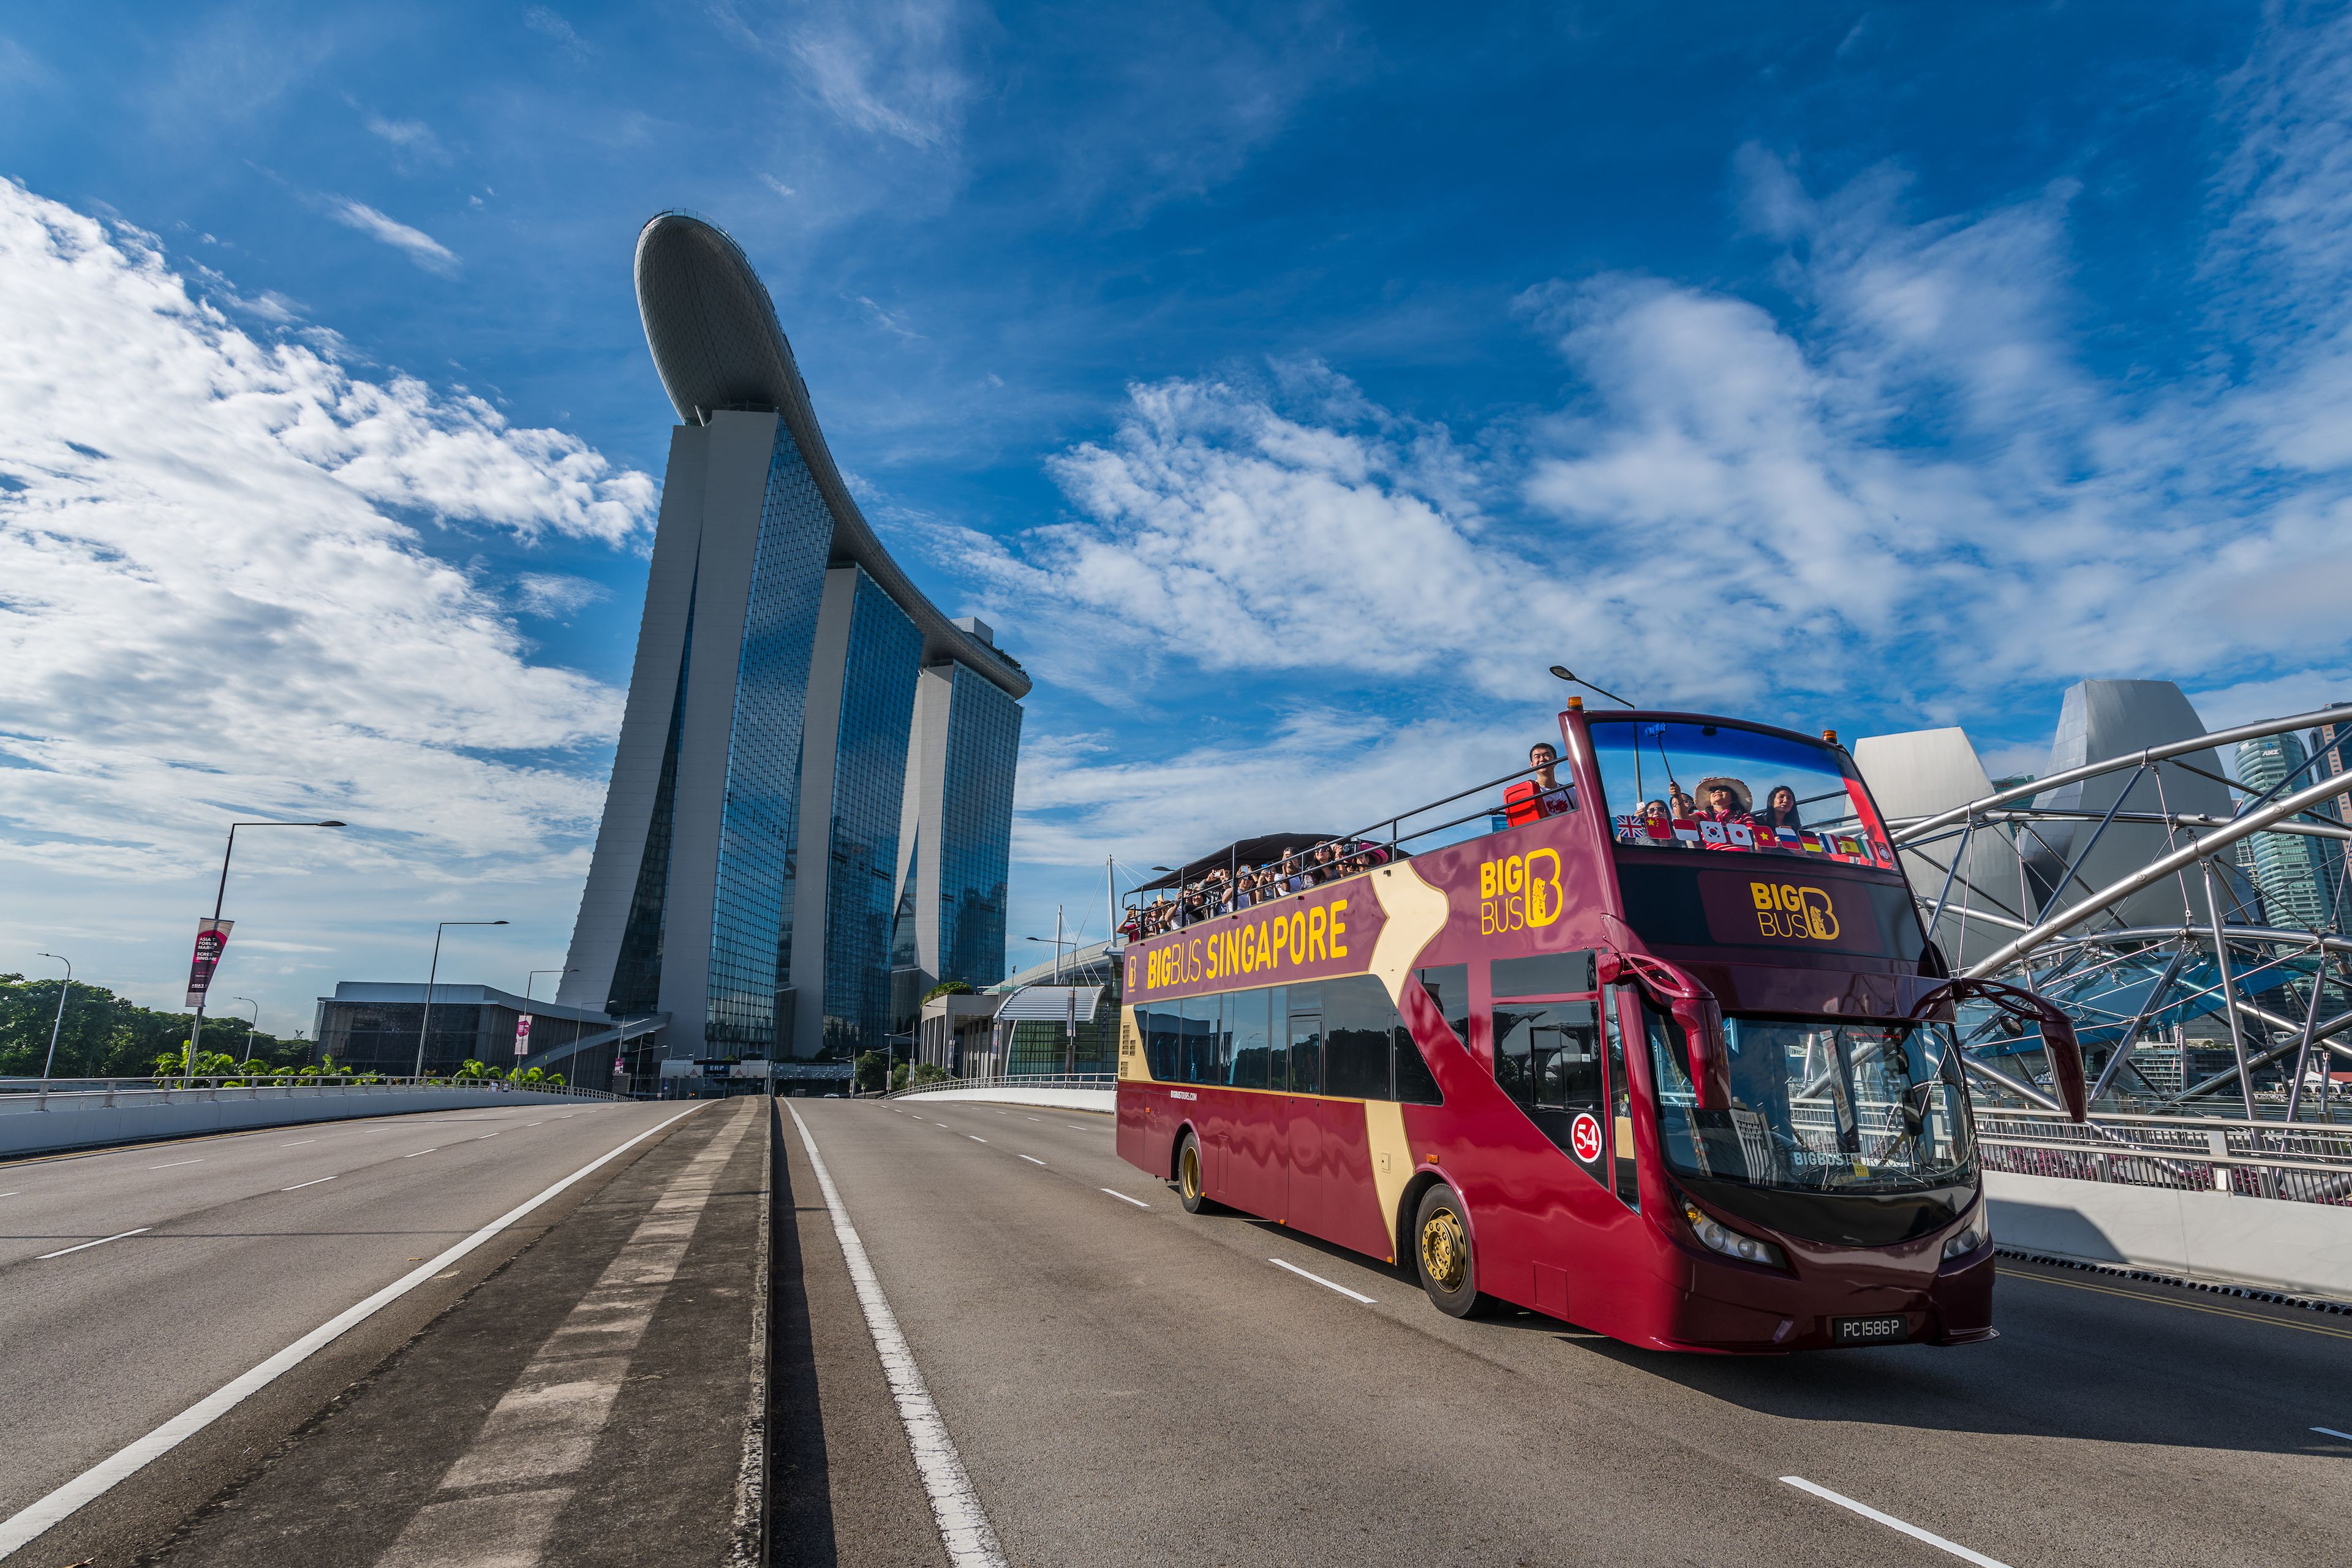 hop on hop off bus tour singapore